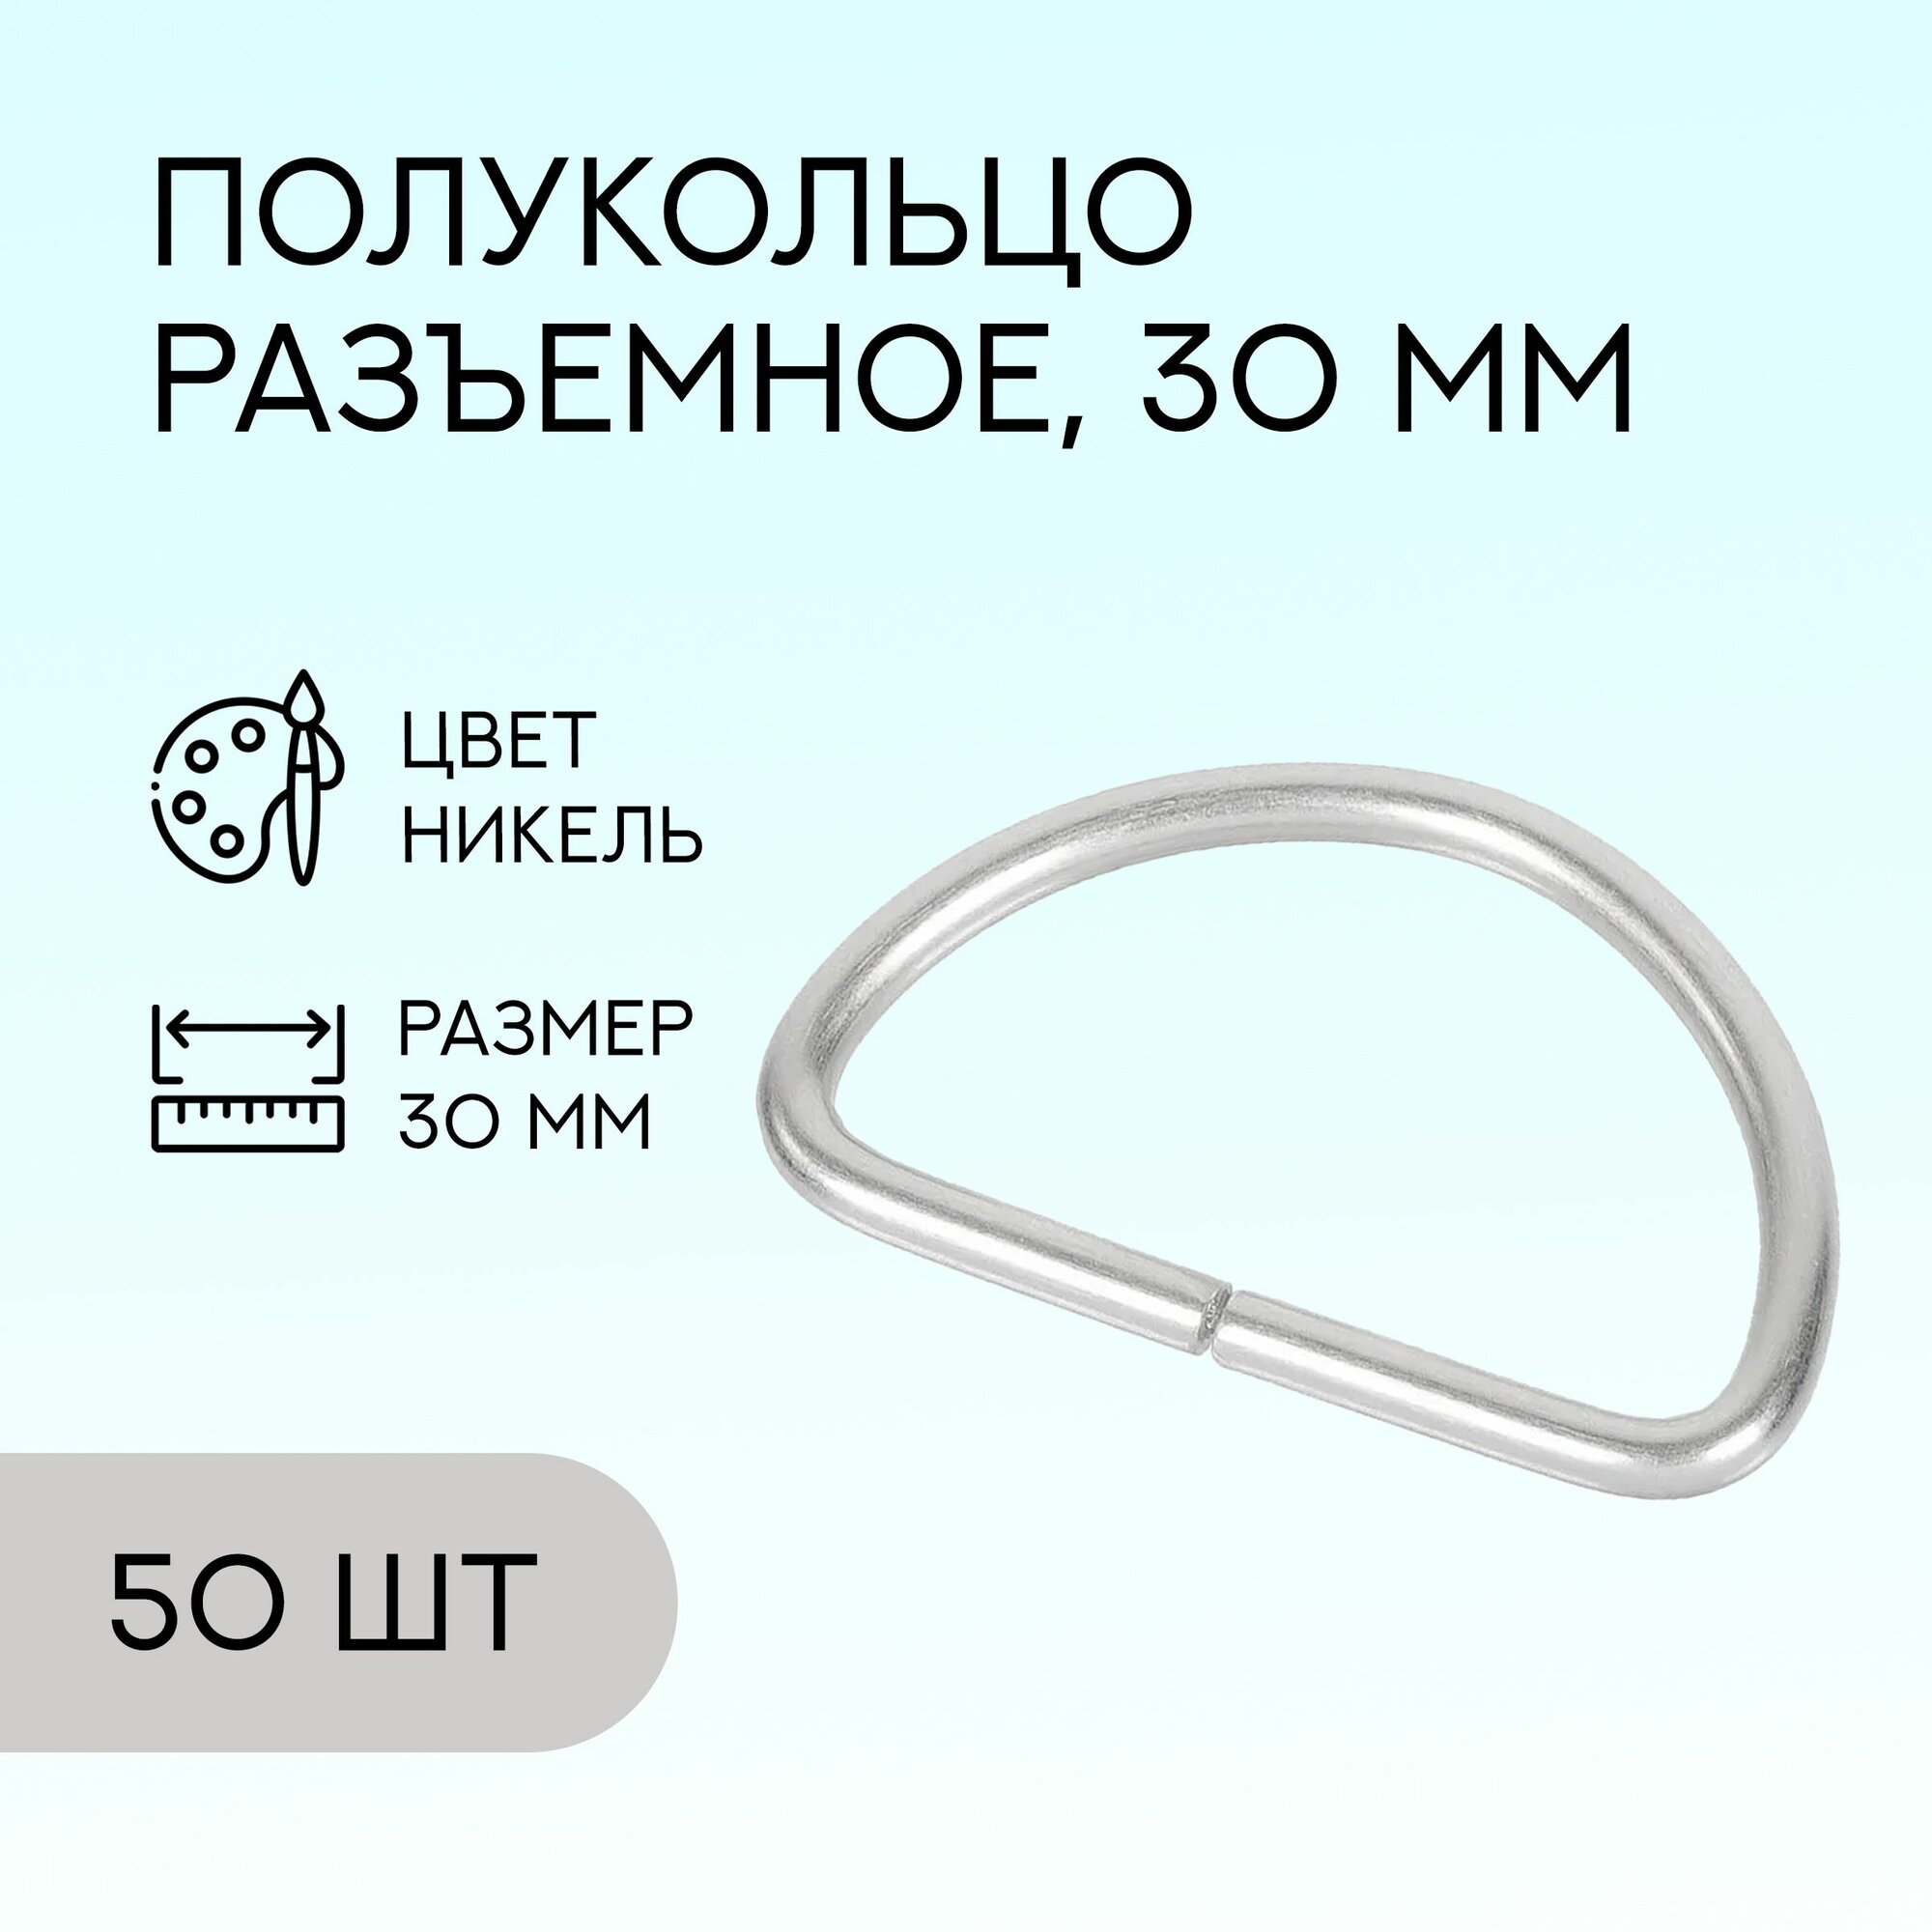 Полукольцо разъемное, 30 мм, никель, 50 шт. / кольцо для сумок и рукоделия